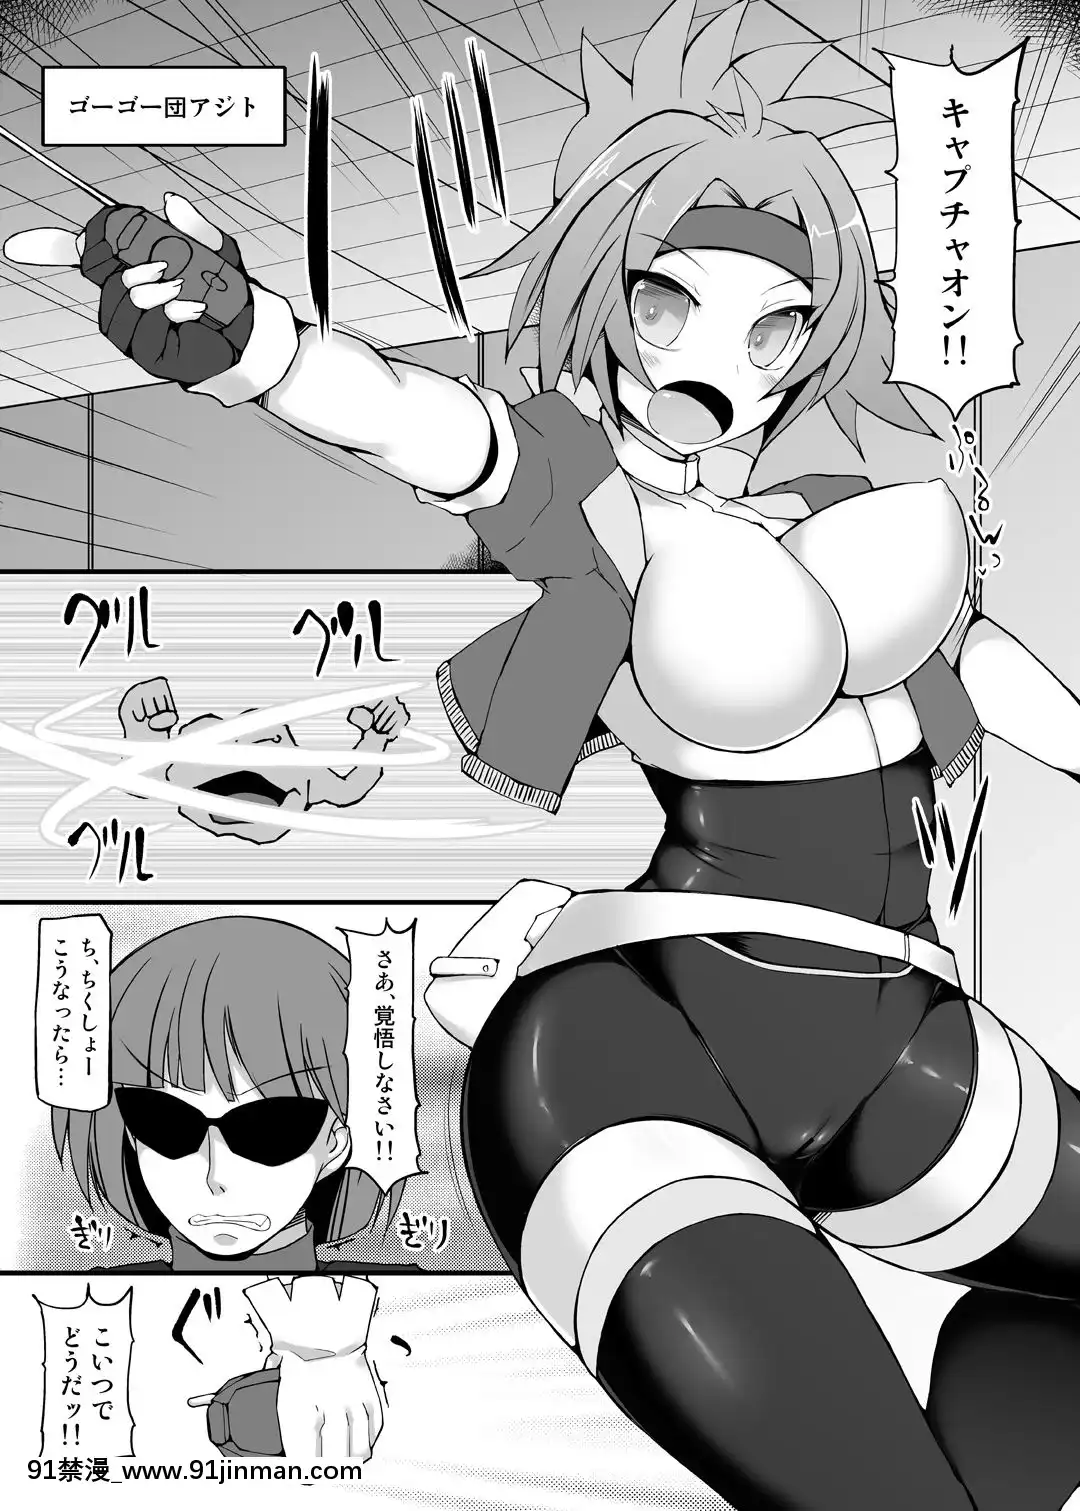 [Stapspats  (Jade Stone)]   Pocket Ranger bắt buộc thôi miên Hinata nữ kiểm lâm biến thái đào tạo thôi miên  (Pocket Monsters)【cat black guy hentai dance gif】